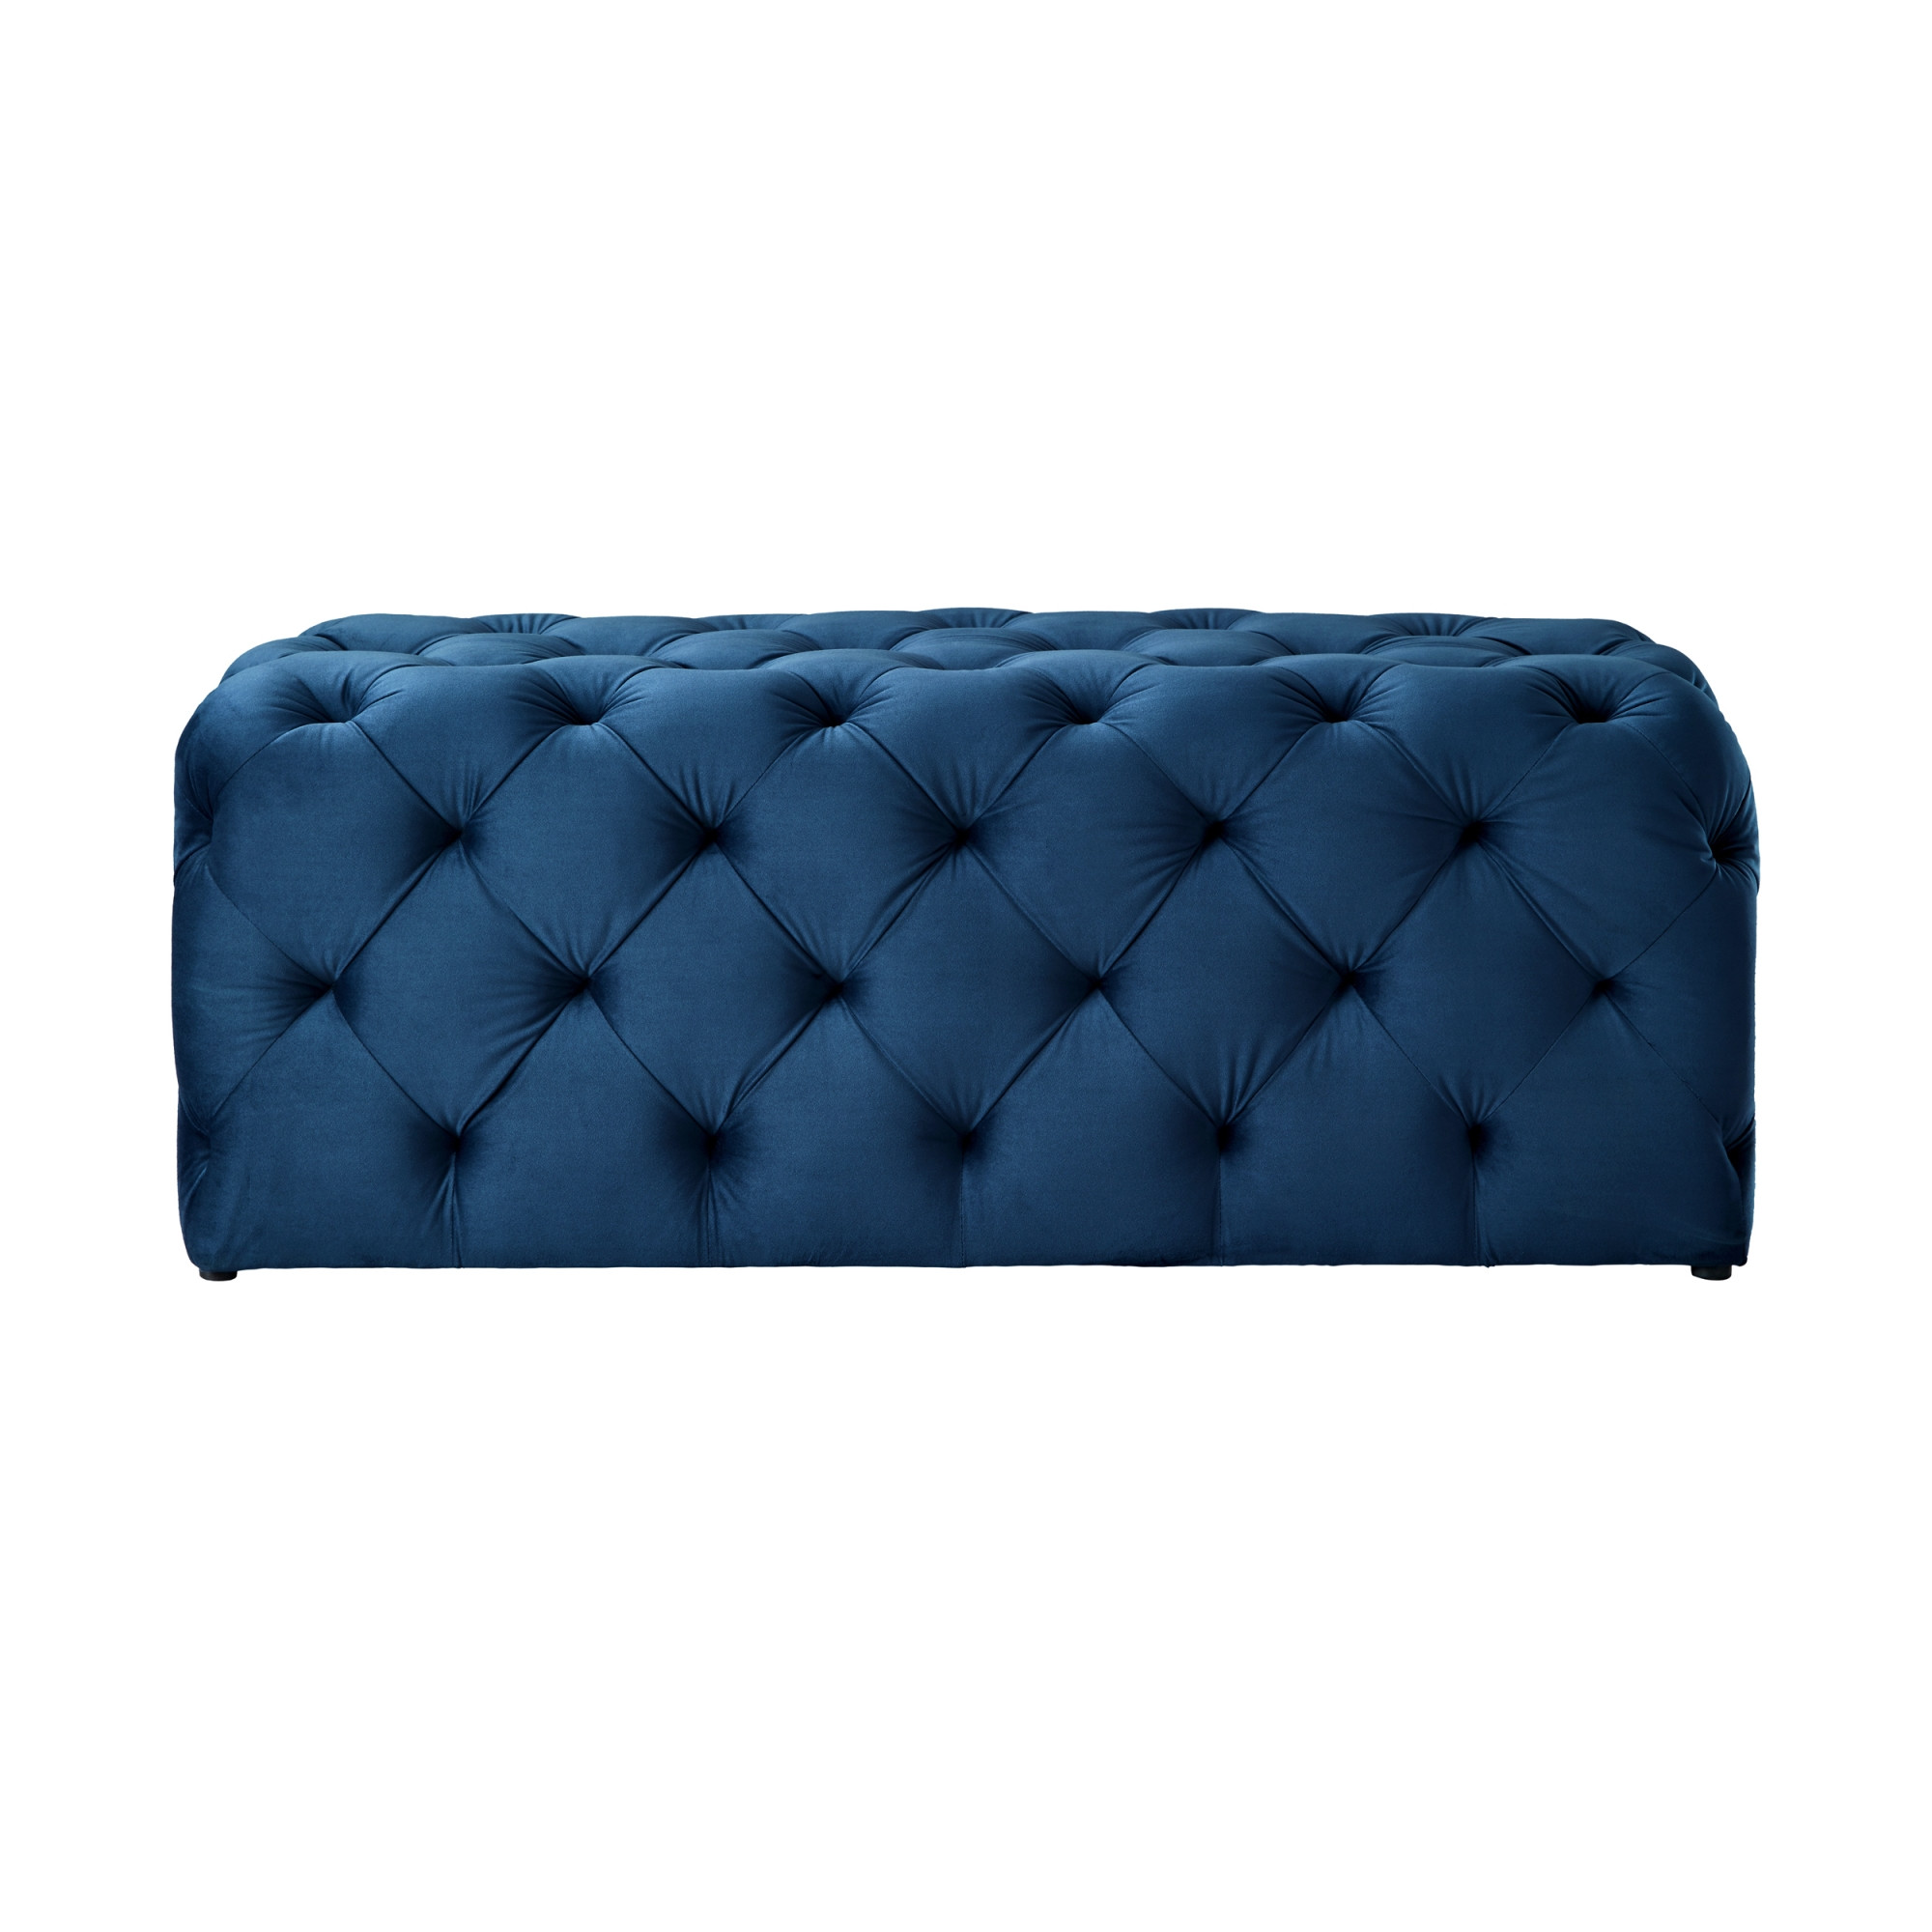 48" Navy Blue And Black Upholstered Velvet Bench-490940-1